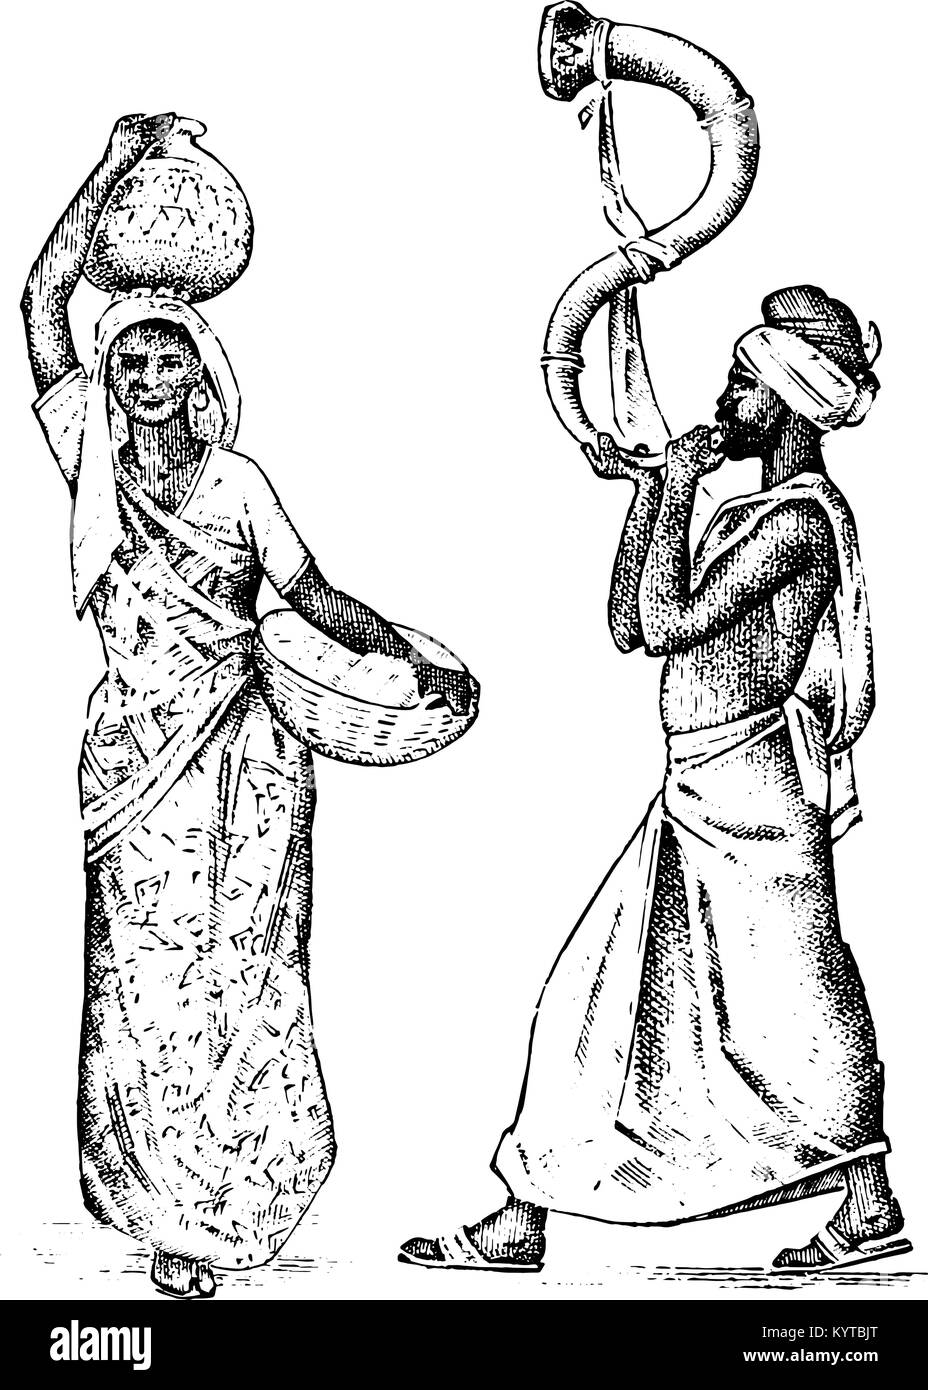 Hindu in Indien gearbeitet. graviert Hand in alte Skizze gezeichnet, Vintage Style. Unterschiede Hindu ethnischen Menschen in traditioneller Kleidung. Vector Illustration. Religiöse Kostüme. Stock Vektor